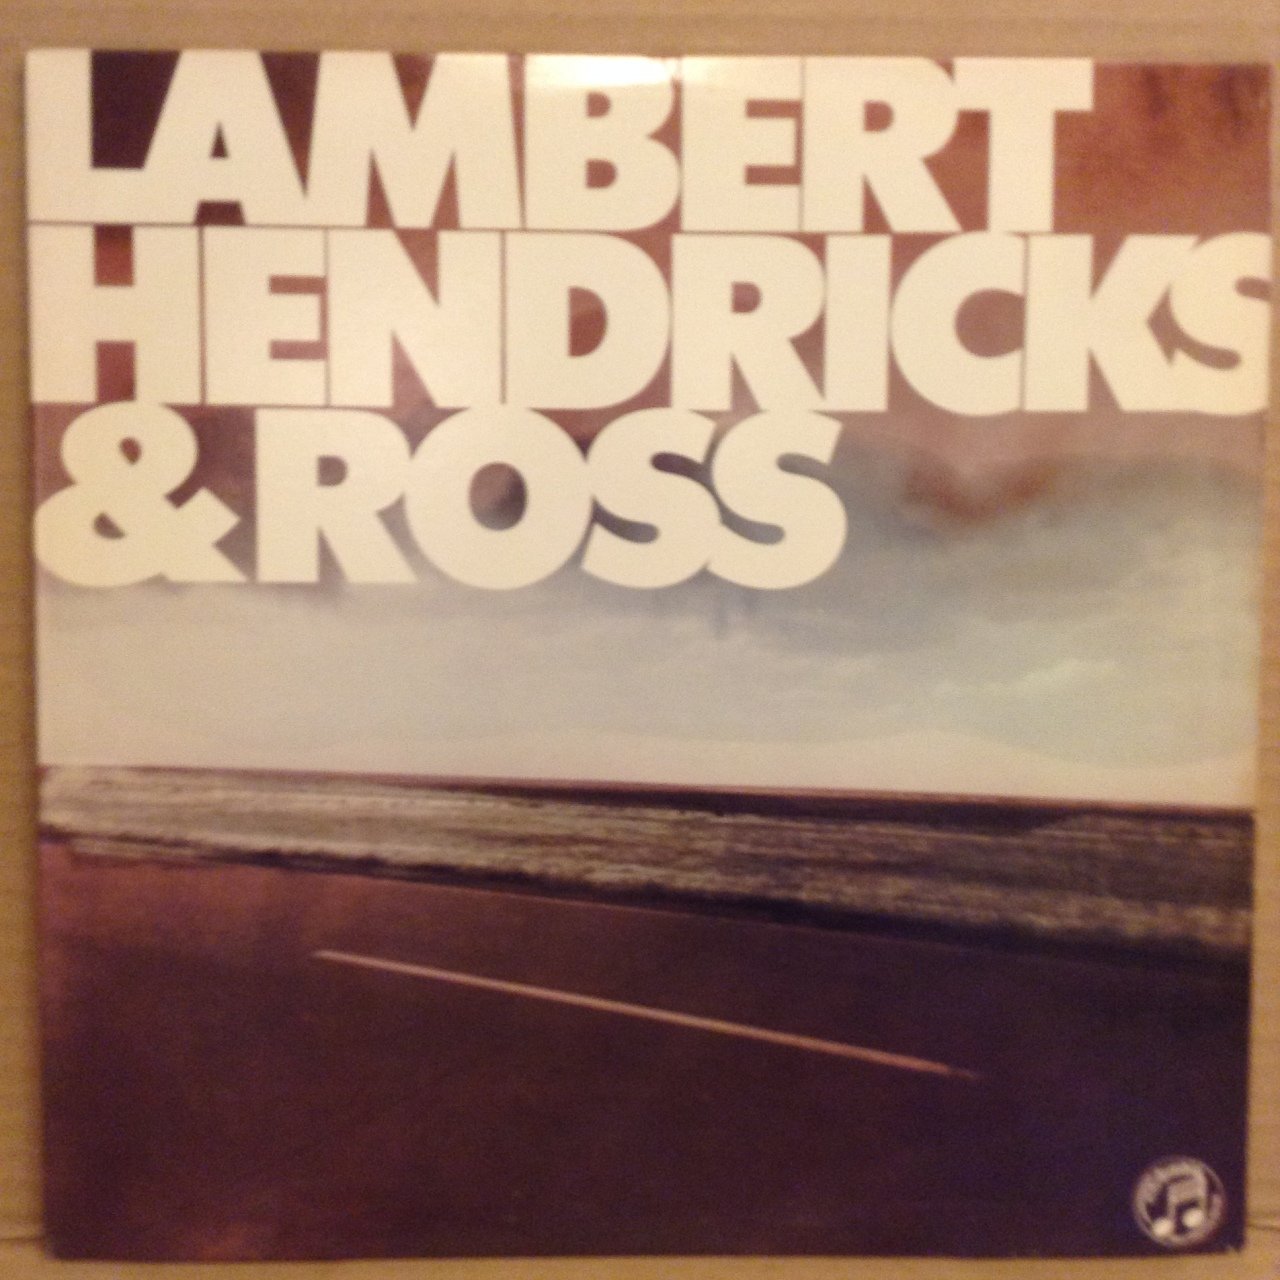 LAMBERT, HENDRICKS & ROSS (1961) 1981 2.EL PLAK